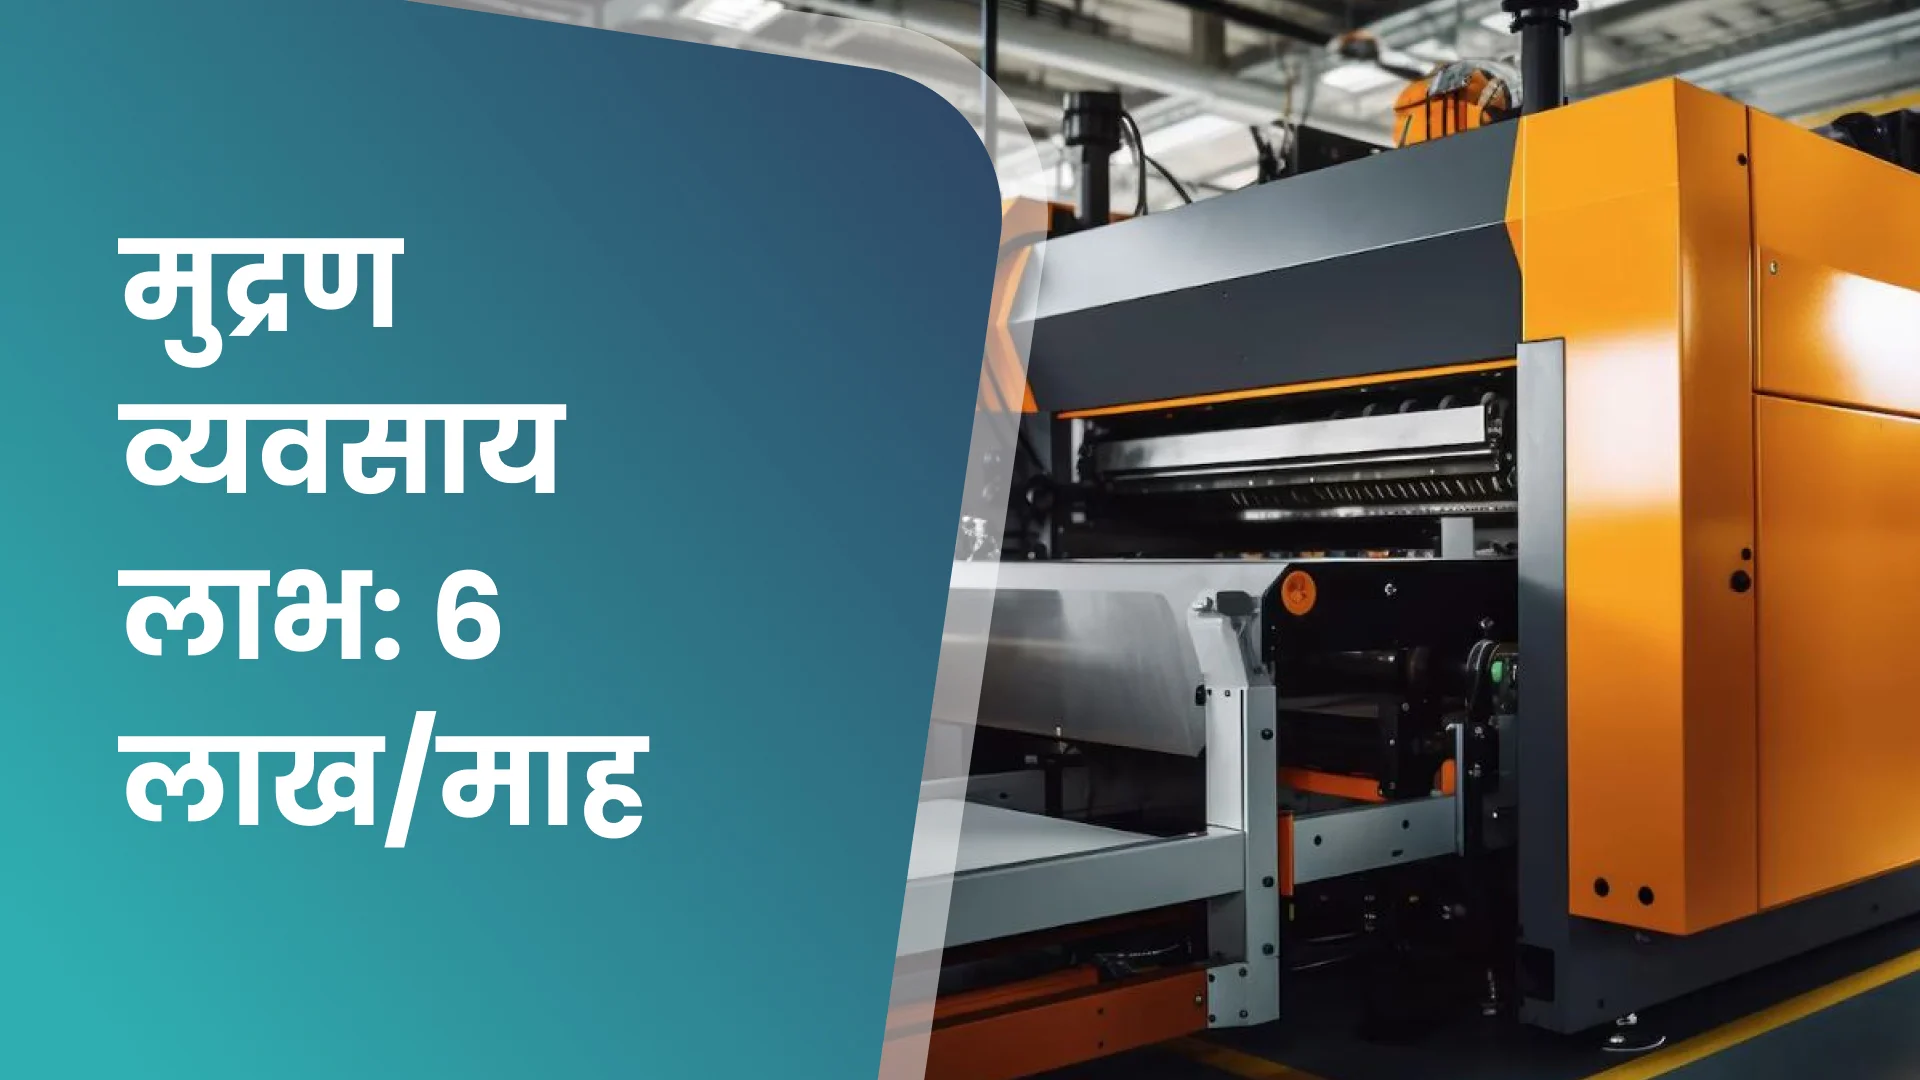 कोर्स ट्रेलर: प्रिंटिंग व्यवसाय शुरू करें और कमाएं ₹5 से 6 लाख आय/माह। अधिक जानने के लिए देखें।